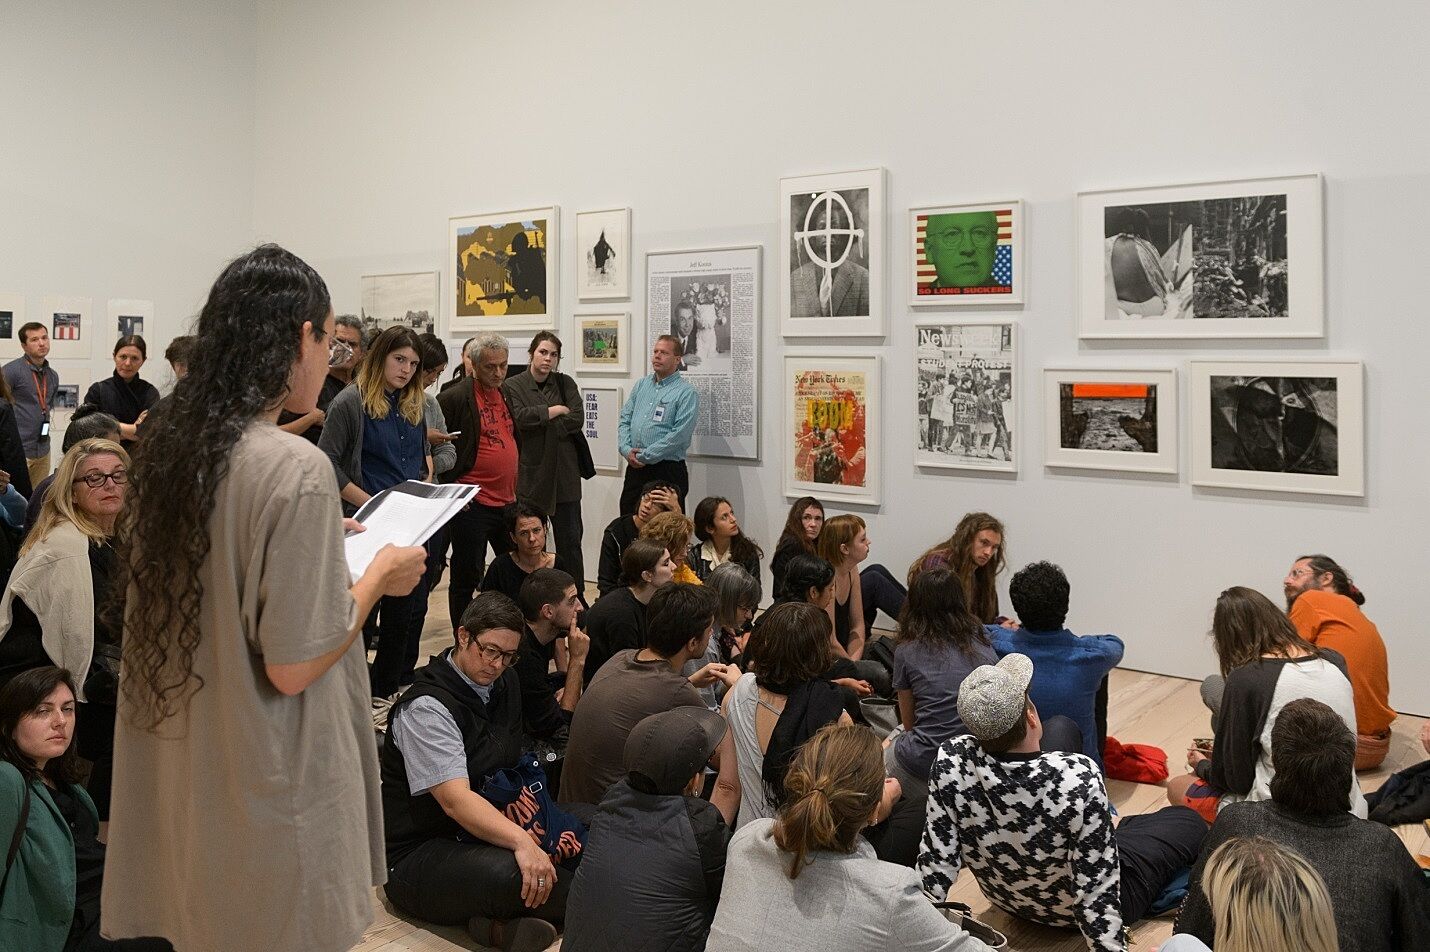 A public reading in an art gallery